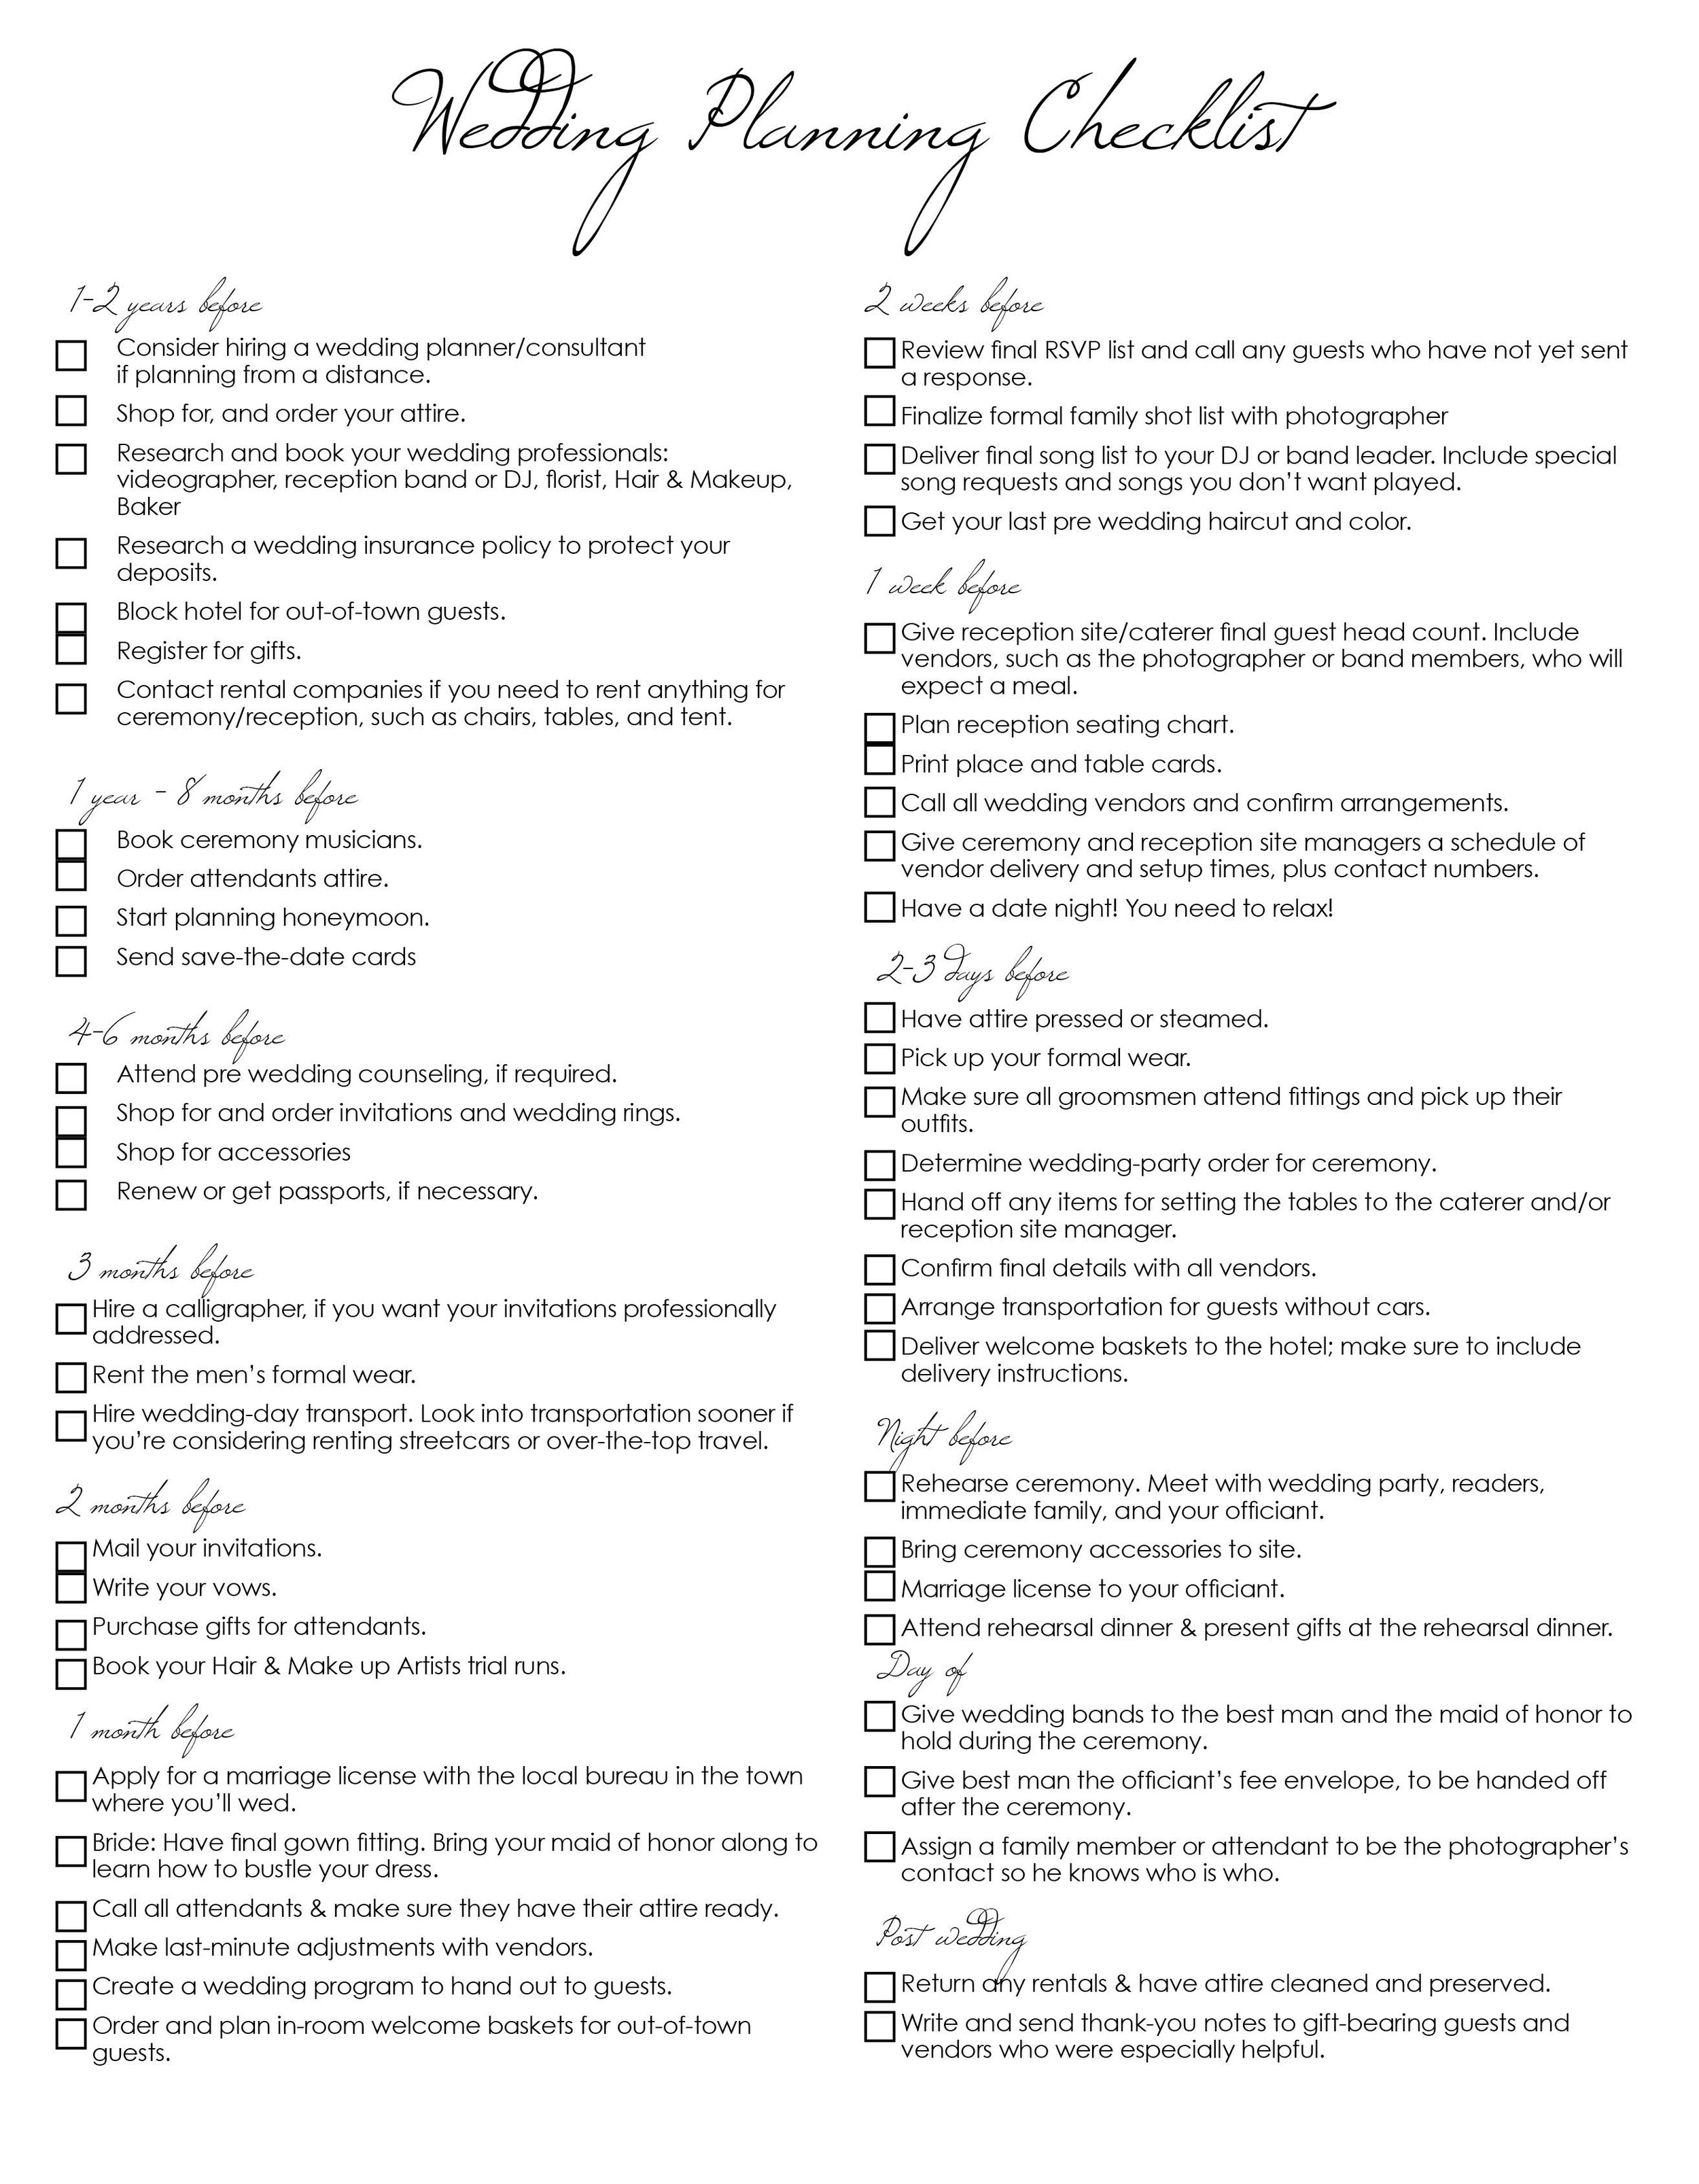 Wedding Planning Checklist 